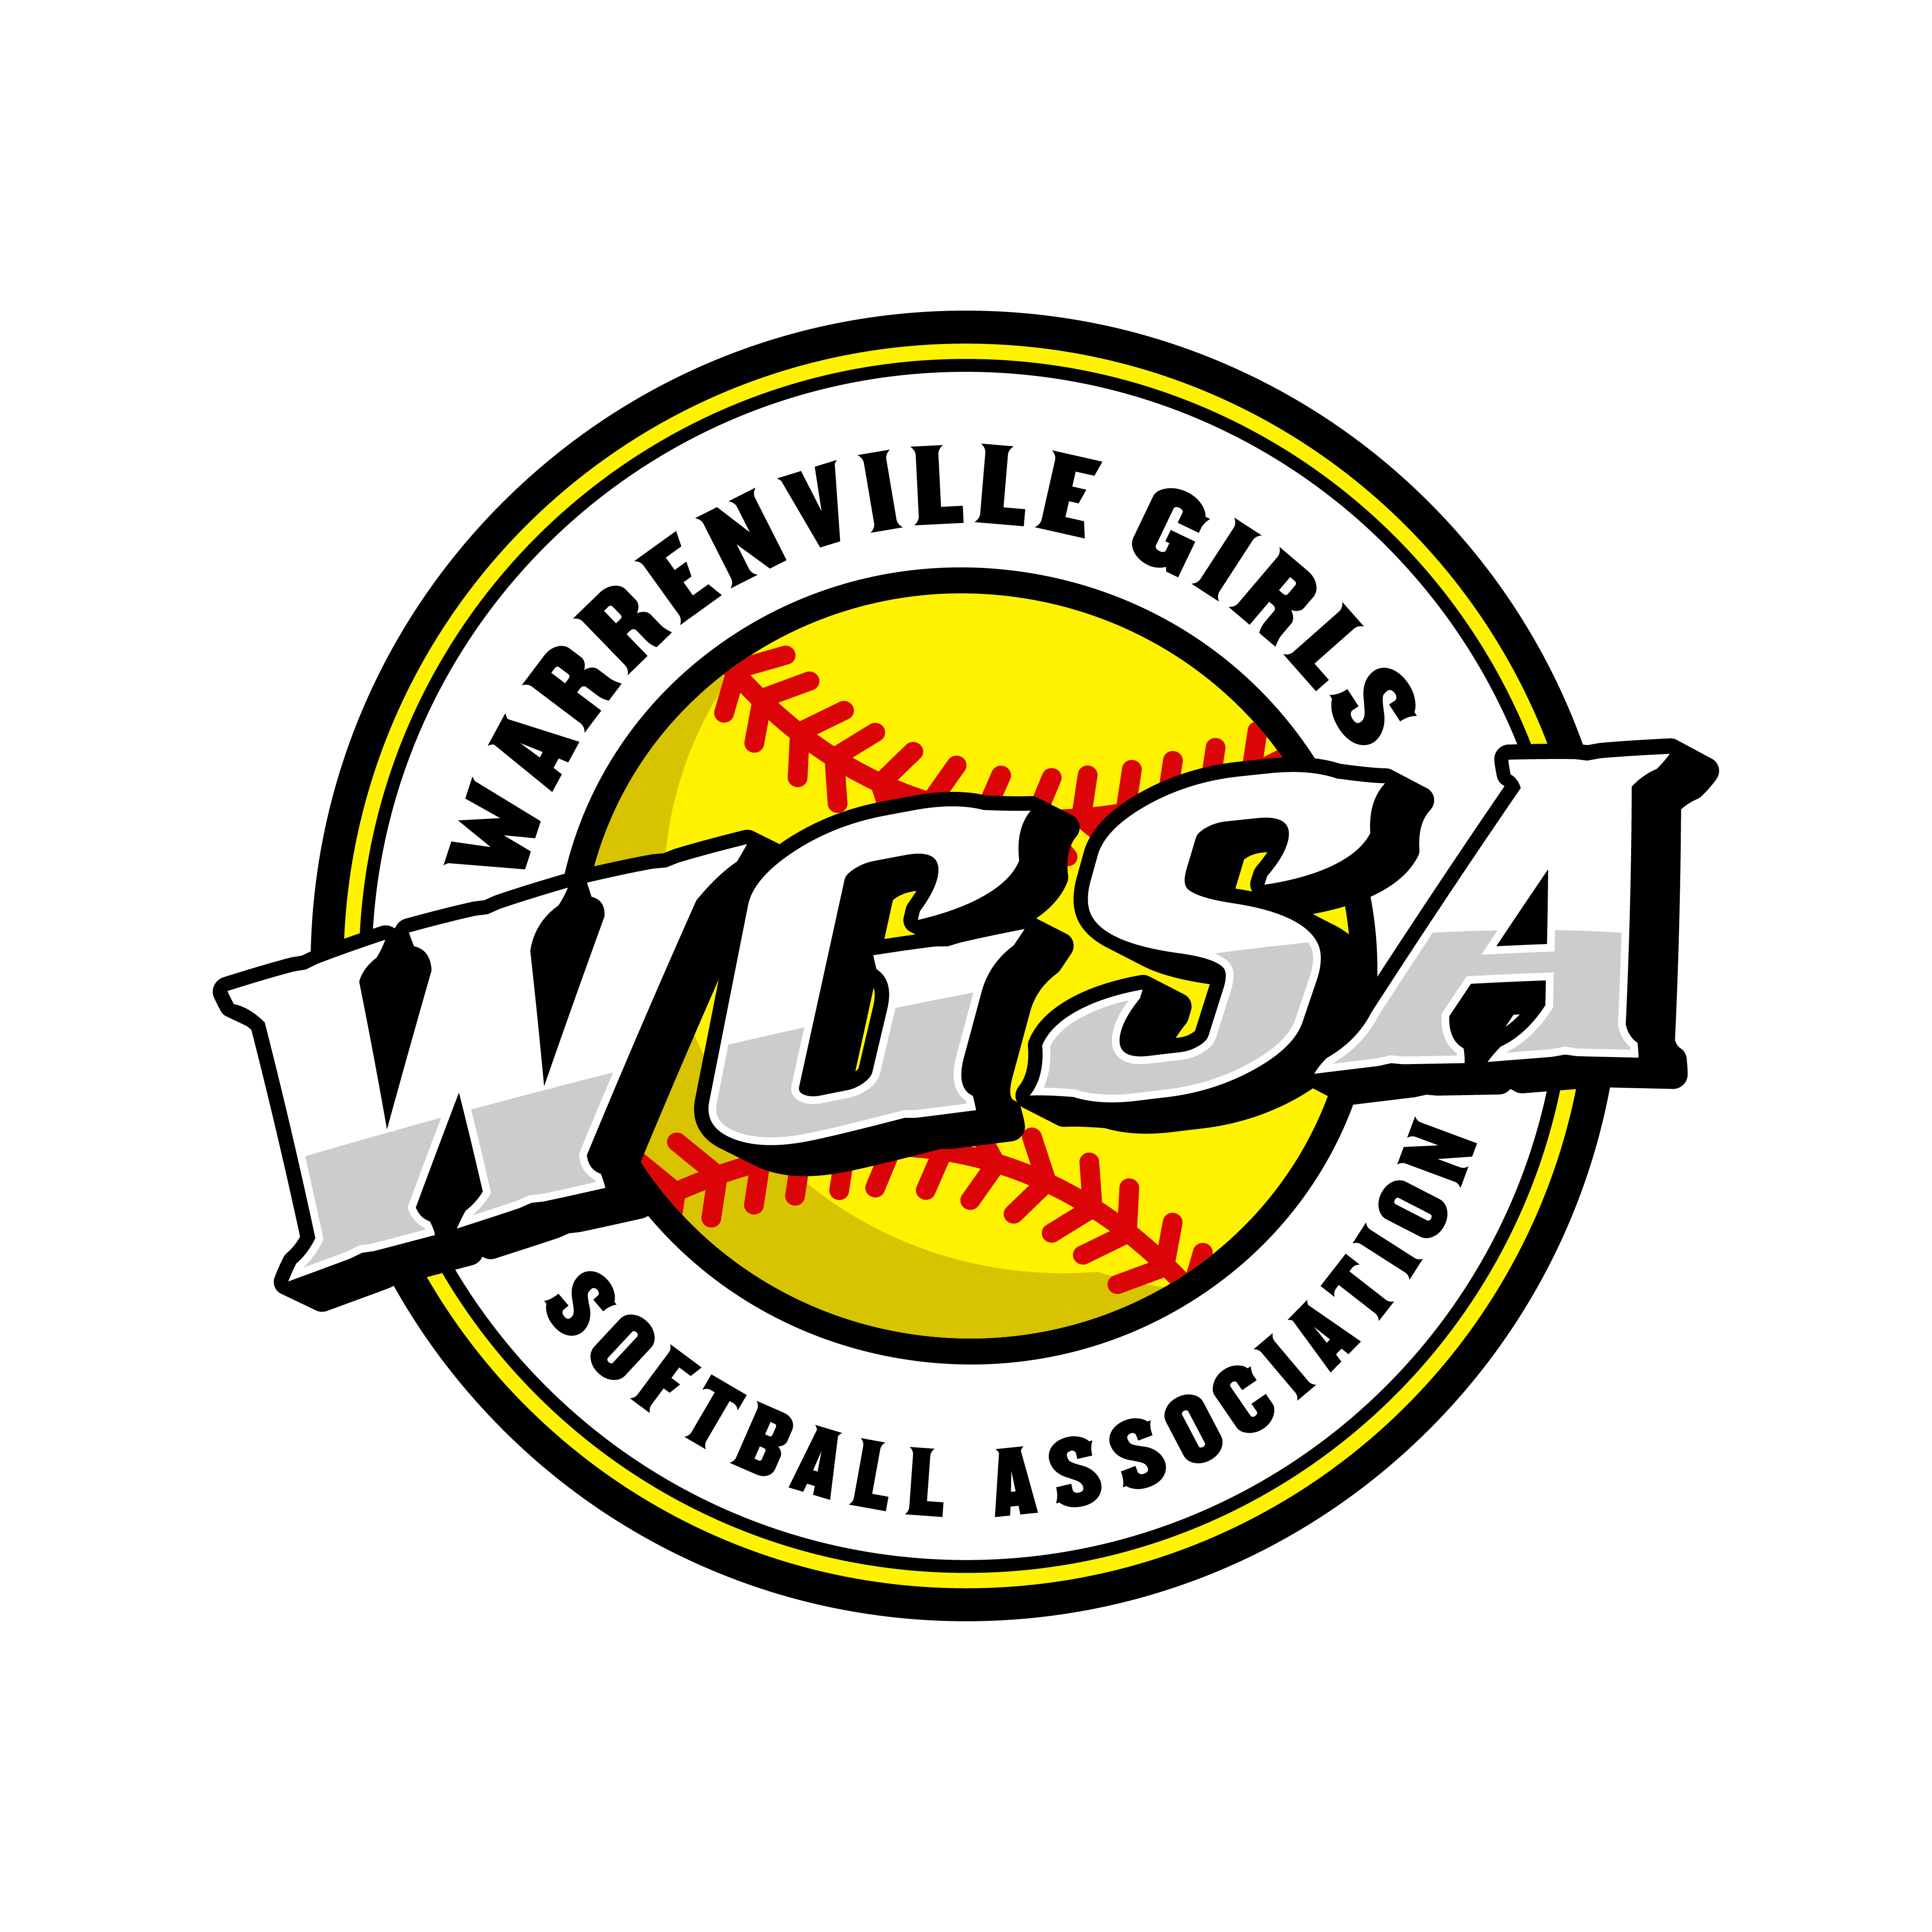 Warrenville Girls Softball Association Logo